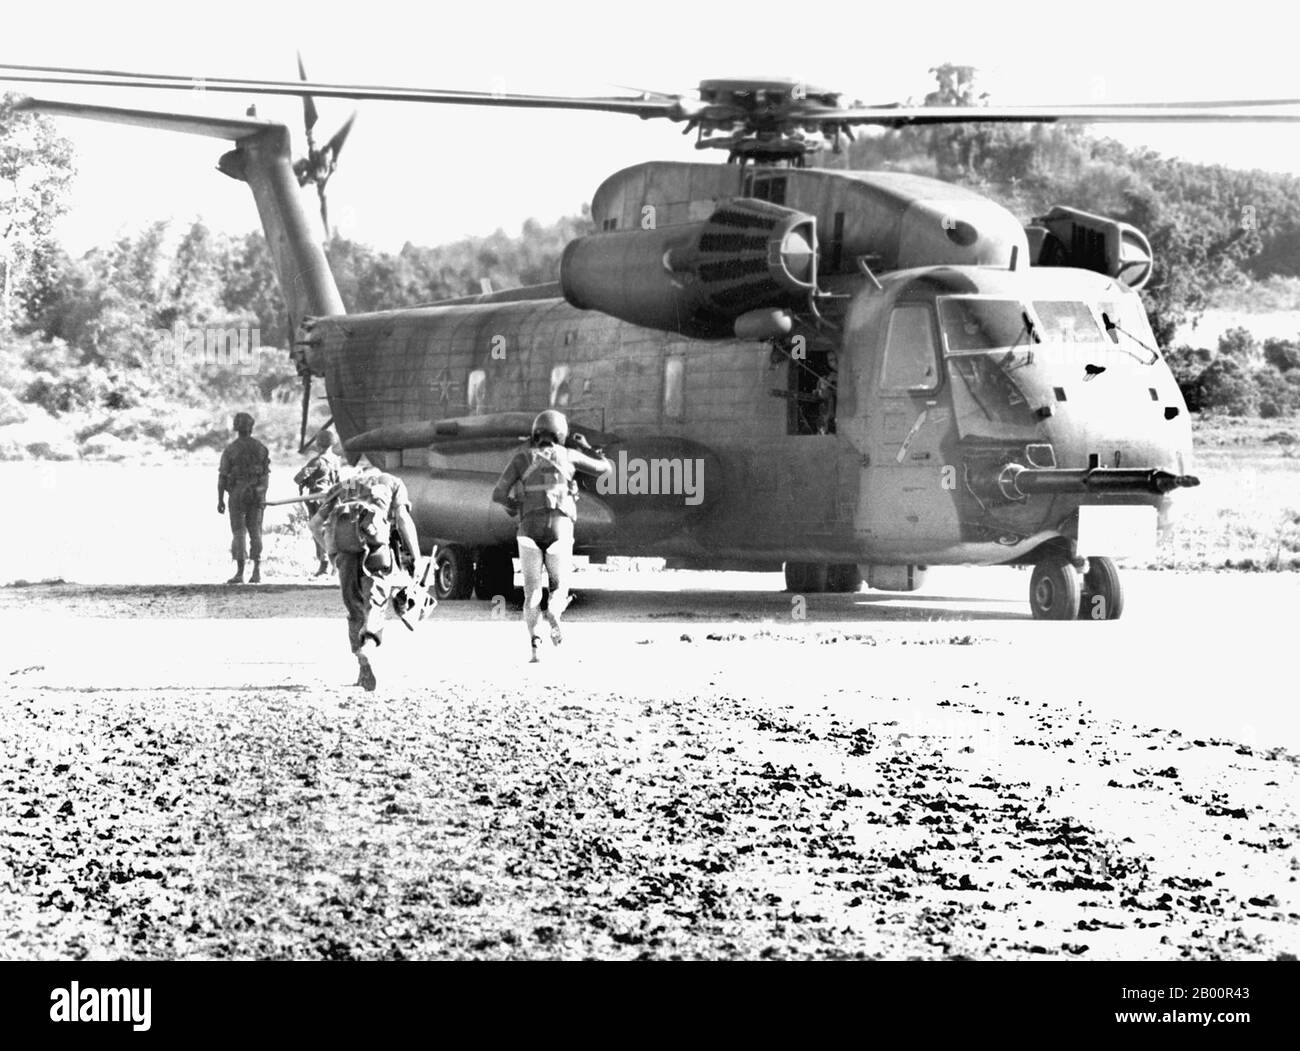 Kambodscha: Der Zwischenfall Von Mayaguez, 12.-15. Mai 1975. Ein USAF-Soldat des 40. Luft- und Raumfahrtgeschwaders führt Marines zu einem HH-53 Hubschrauber. Am 12. Mai 1975 beschlagnahmten die Roten Khmer die USS Mayaguez und ihre Besatzung in kambodschanischen Hoheitsgewässern, als sie sich auf dem Weg nach Thailand befanden. Die USA starteten zum ersten Mal eine Rettungsmission, die nach dem Absturz eines Hubschraubers in einer Katastrophe endete. Ein massiver Angriff wurde am 14-15. Mai gestartet und die Mehrheit der Besatzung wurde von der Insel Koh Tang gerettet, aber nicht bevor beide Seiten mehr als ein Dutzend Opfer verloren hatten. Stockfoto